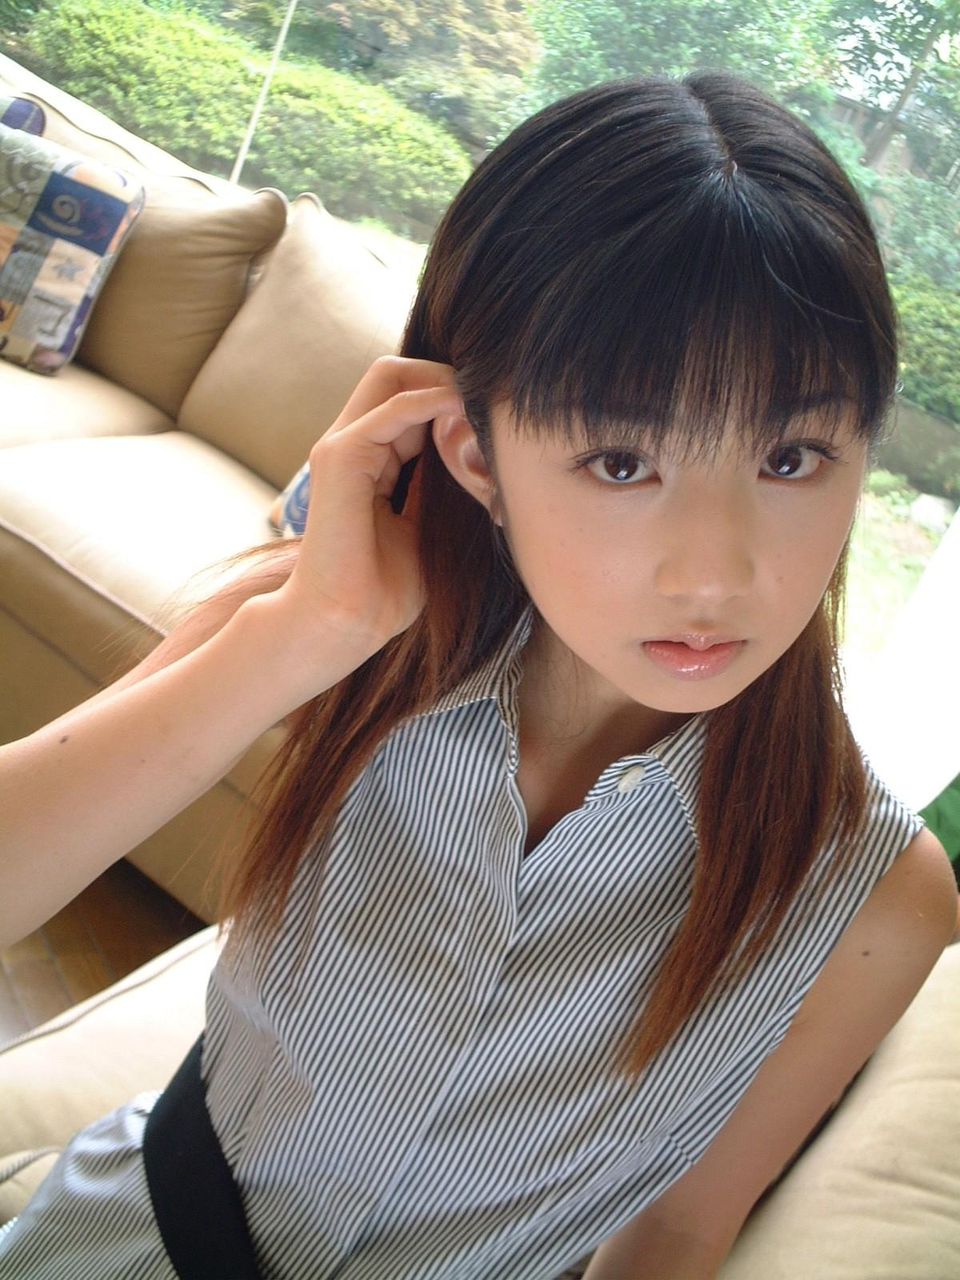 【高画質限定】 超美少女~カワイイ日本の女の子の頂点 【10~16才限定】 : 100点満点の美少女顔とは！？ 選出100枚 - NAVER まとめ